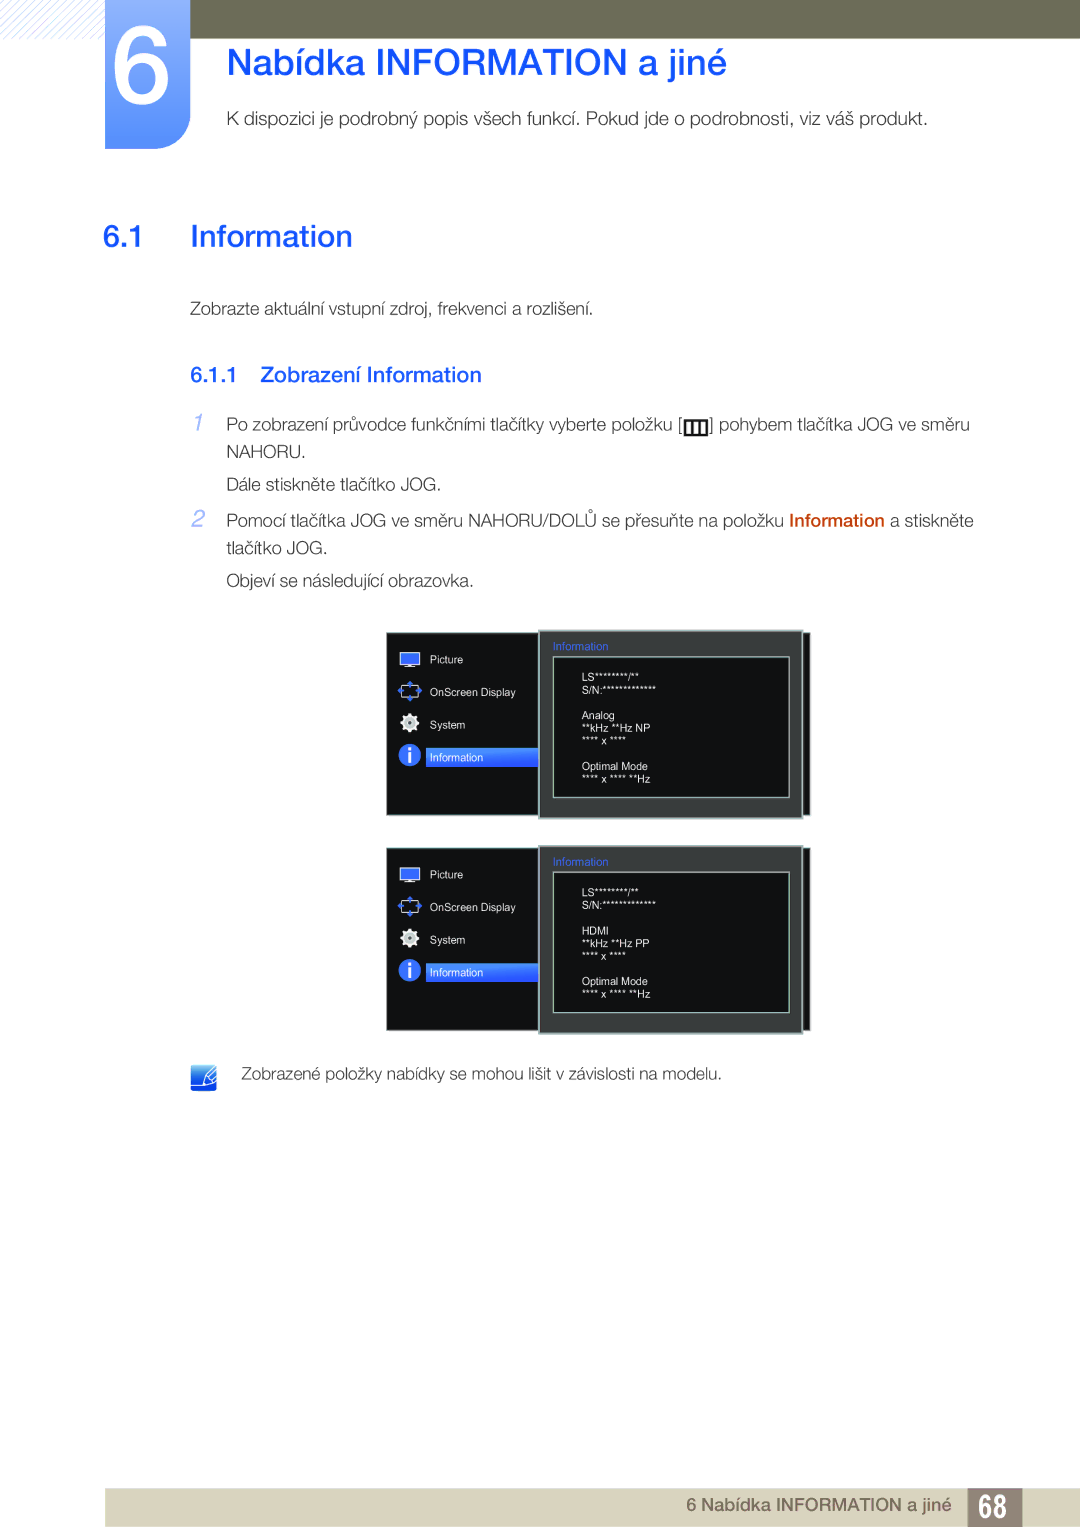 Samsung LS27E510CS/EN manual Nabídka Information a jiné, Zobrazení Information 